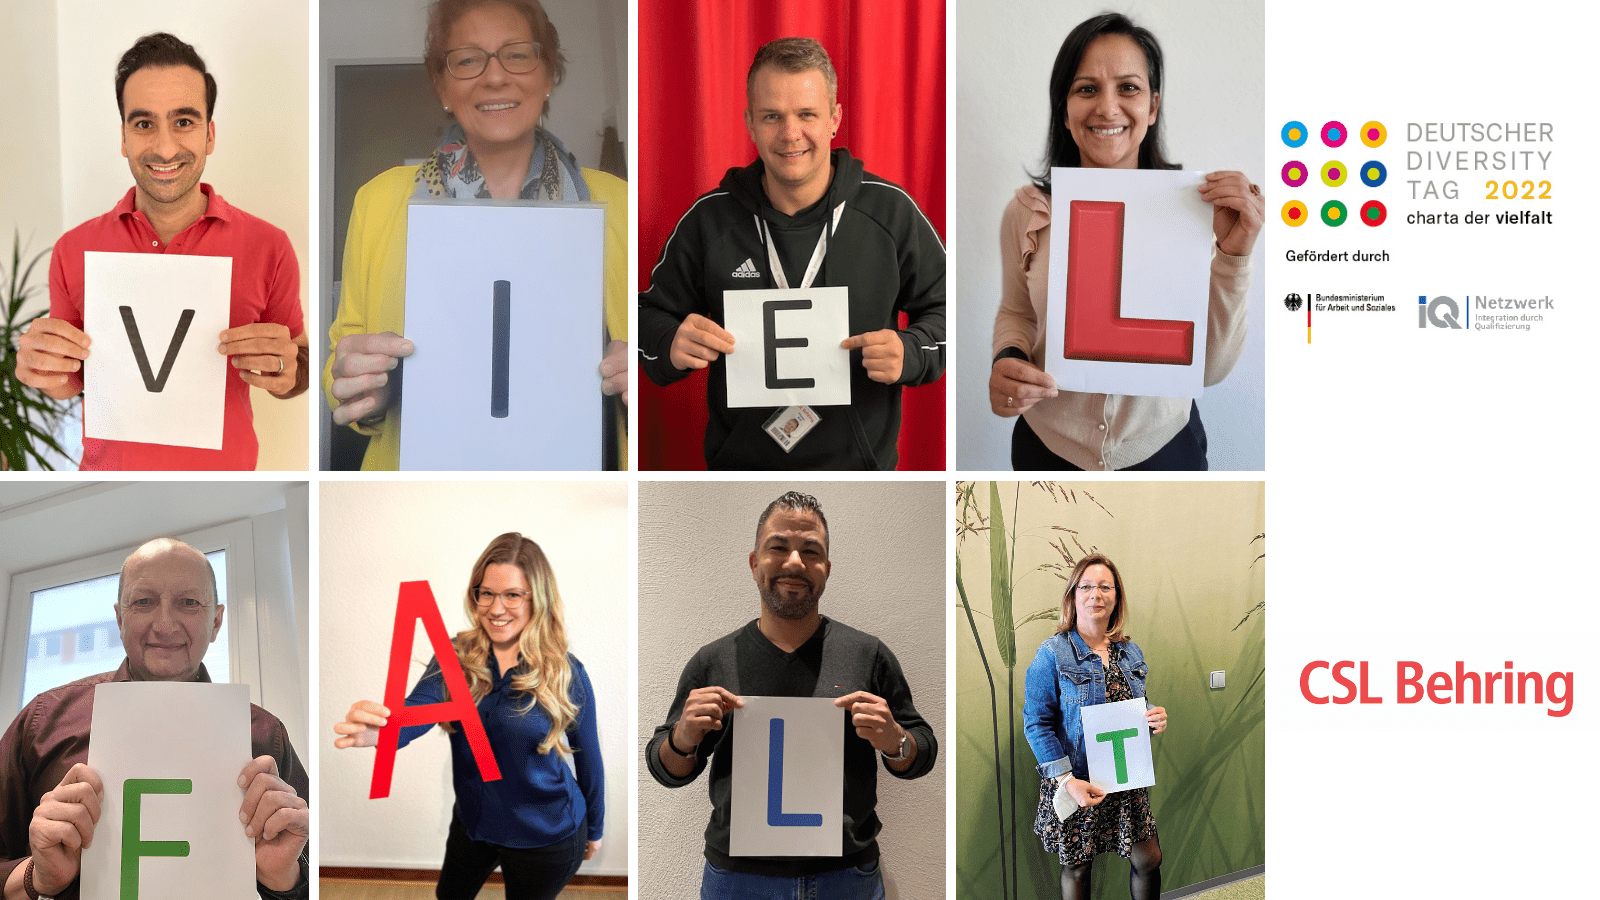 Collage mit 8 Menschen, die Buchstaben hochhalten, die das Wort Vielfalt ergeben